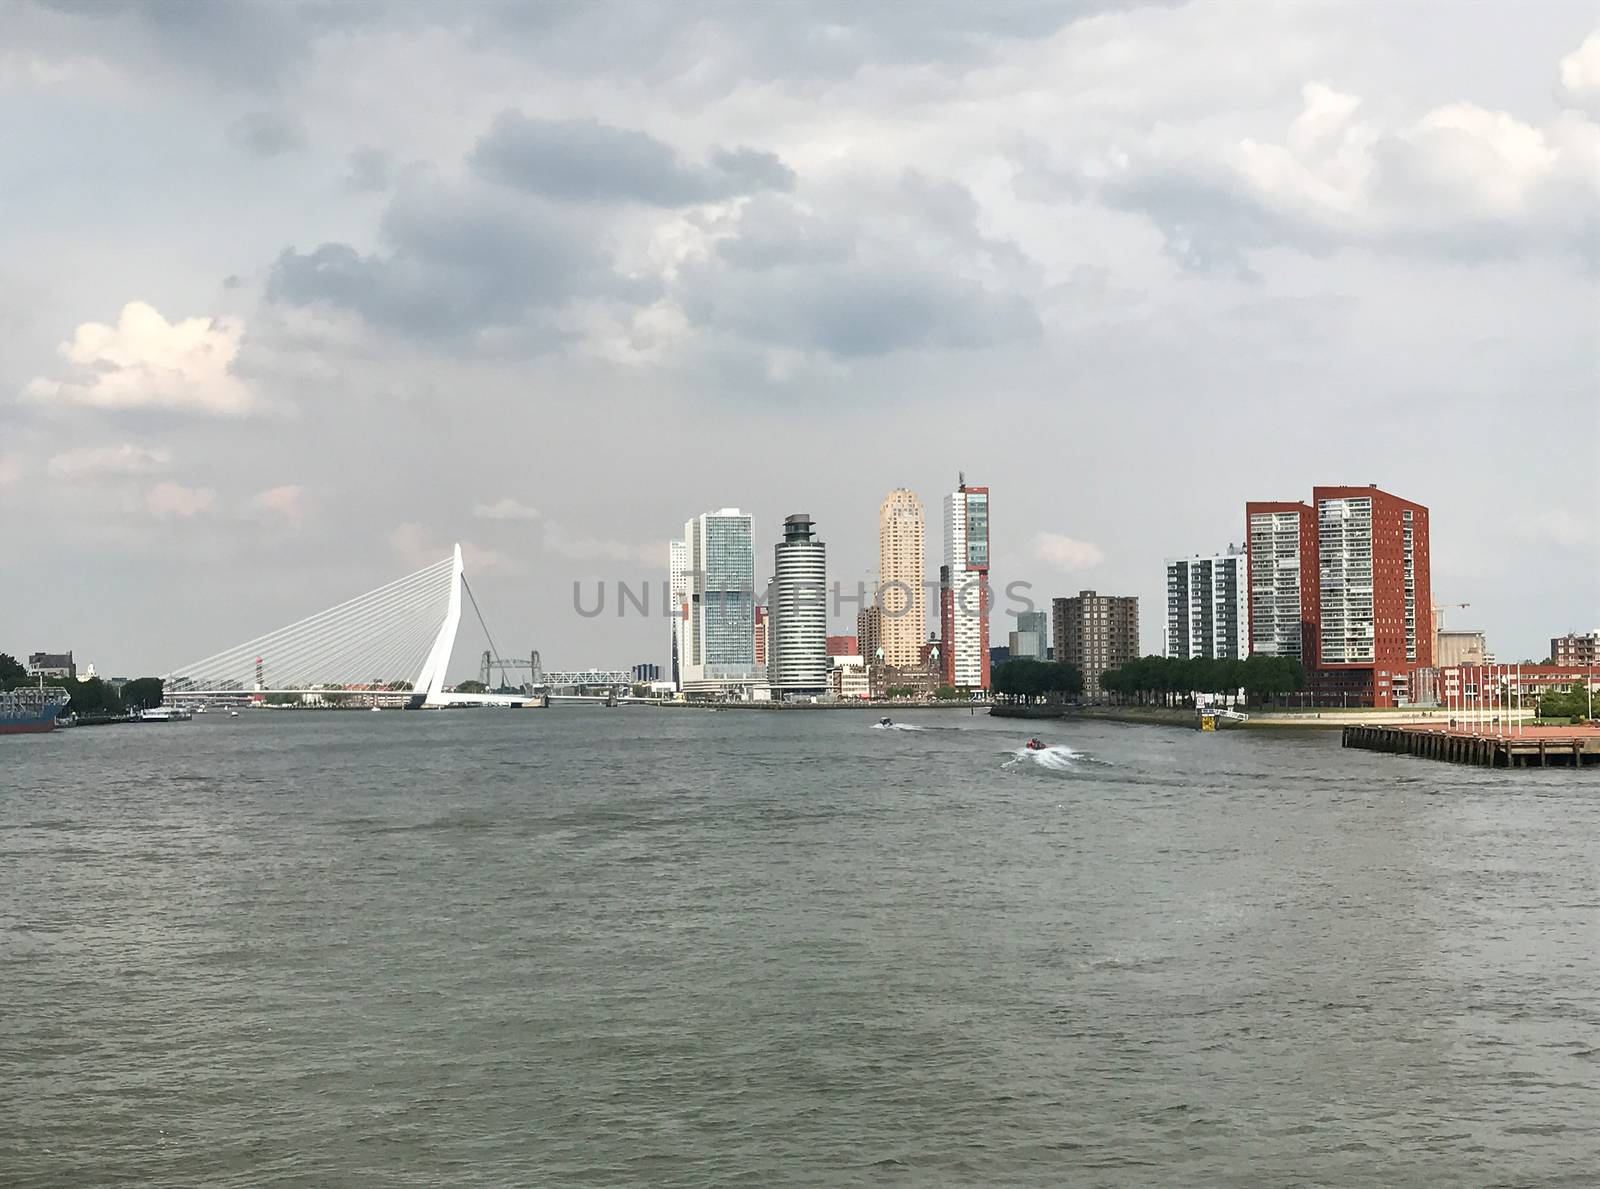 The Rotterdam Skyline by Kartouchken